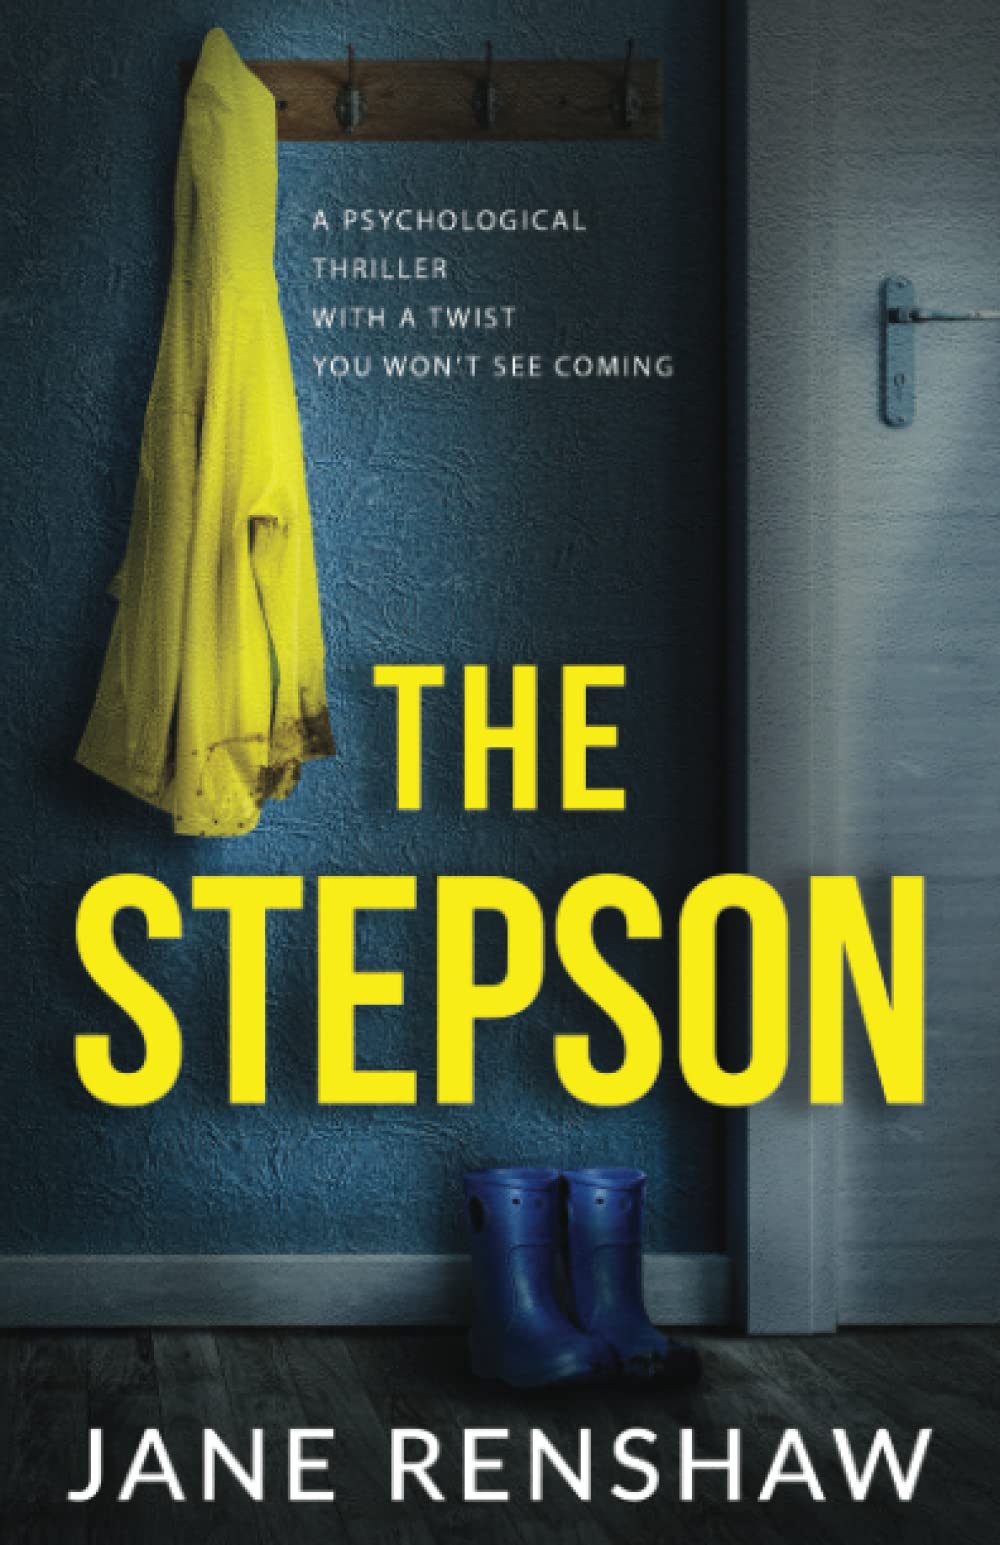 [EPUB] The Stepson by Jane Renshaw